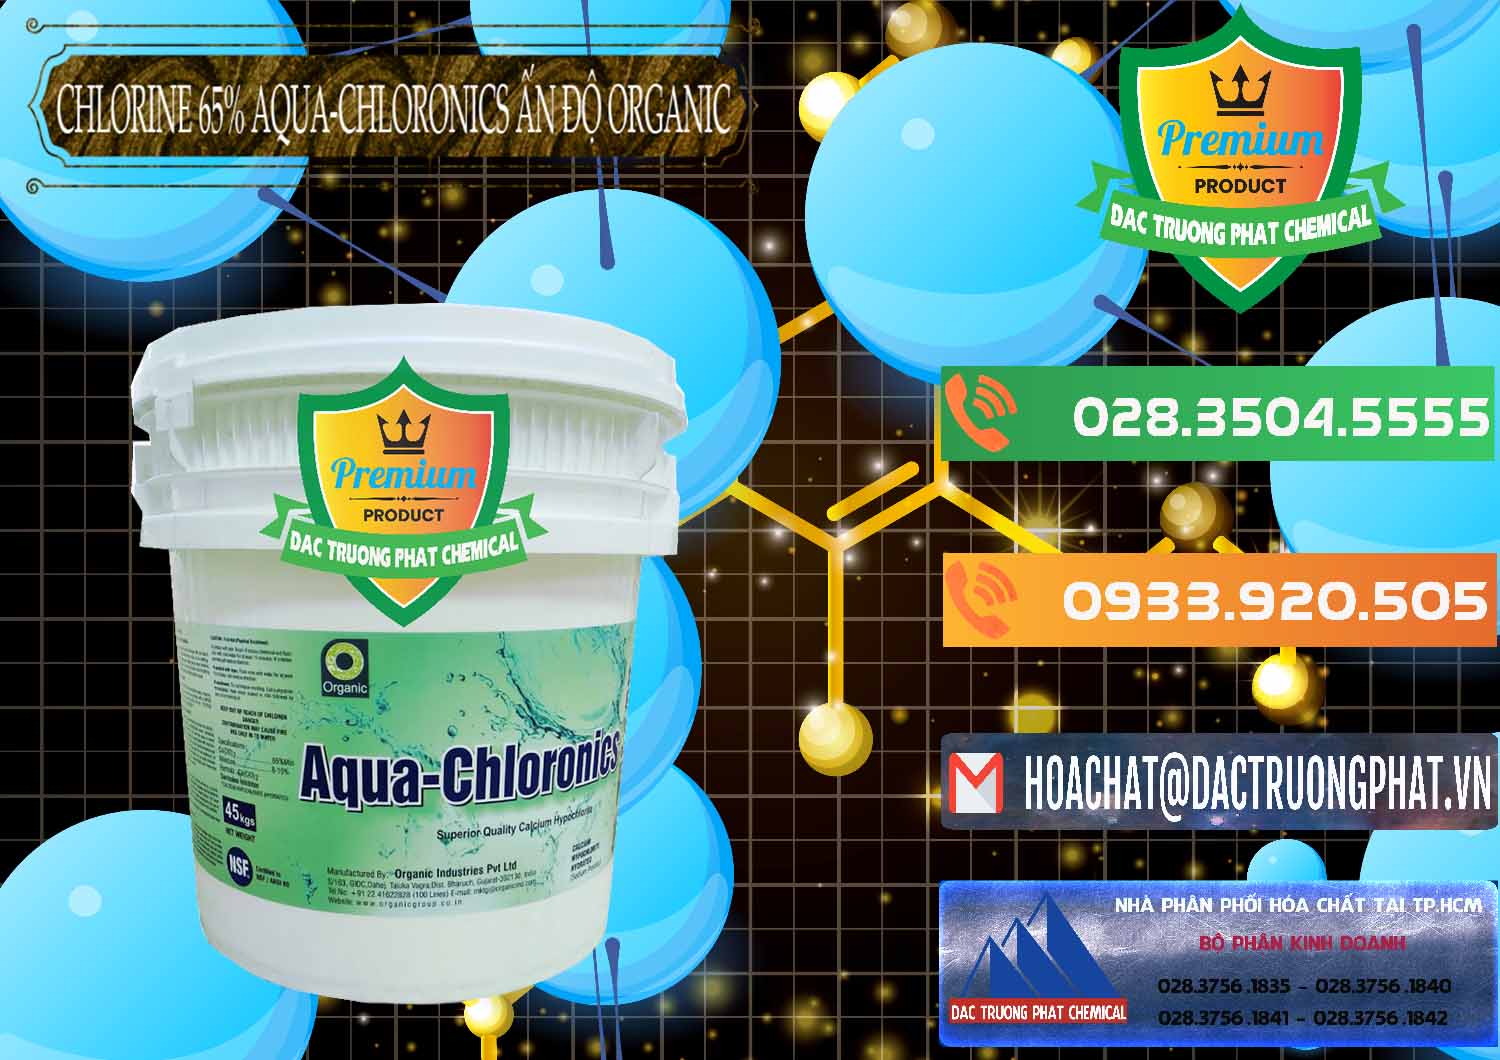 Chuyên bán và phân phối Chlorine – Clorin 65% Aqua-Chloronics Ấn Độ Organic India - 0210 - Chuyên bán & cung cấp hóa chất tại TP.HCM - hoachatxulynuoc.com.vn